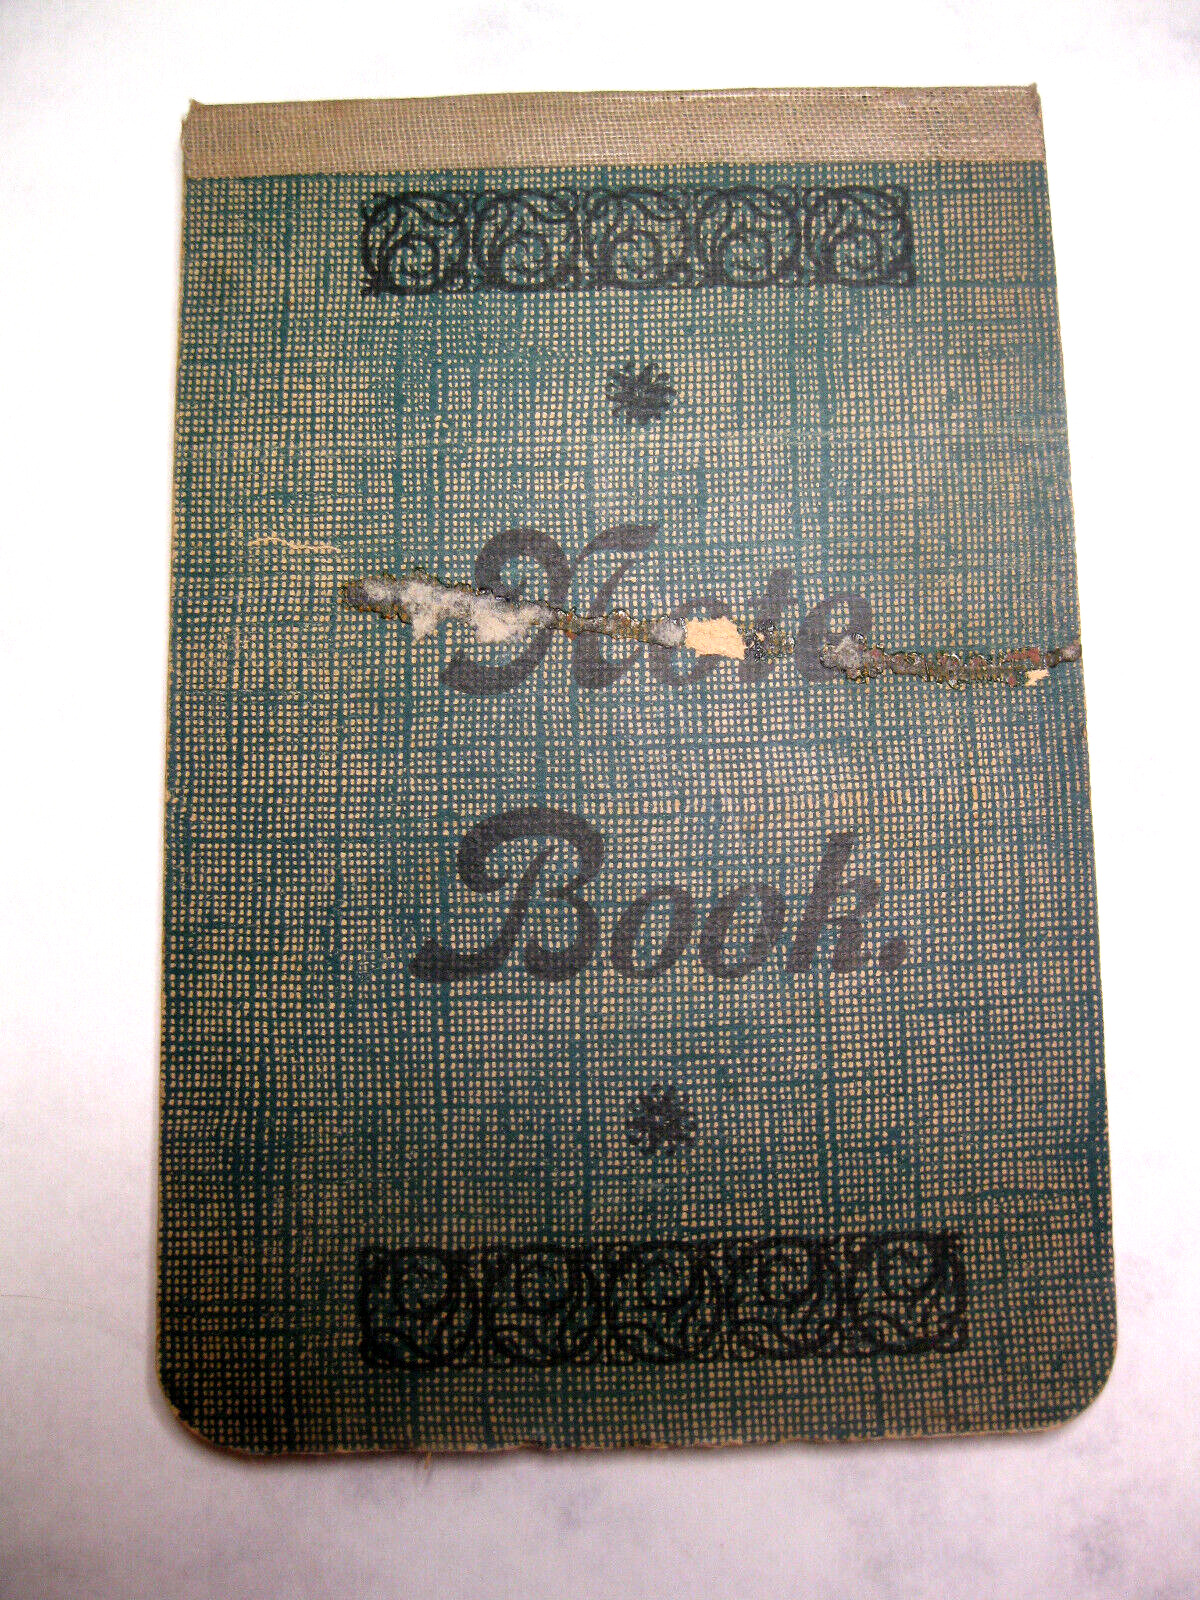 Antique 1919 Notebook Hand Written Activities Of Kindergarten Teacher